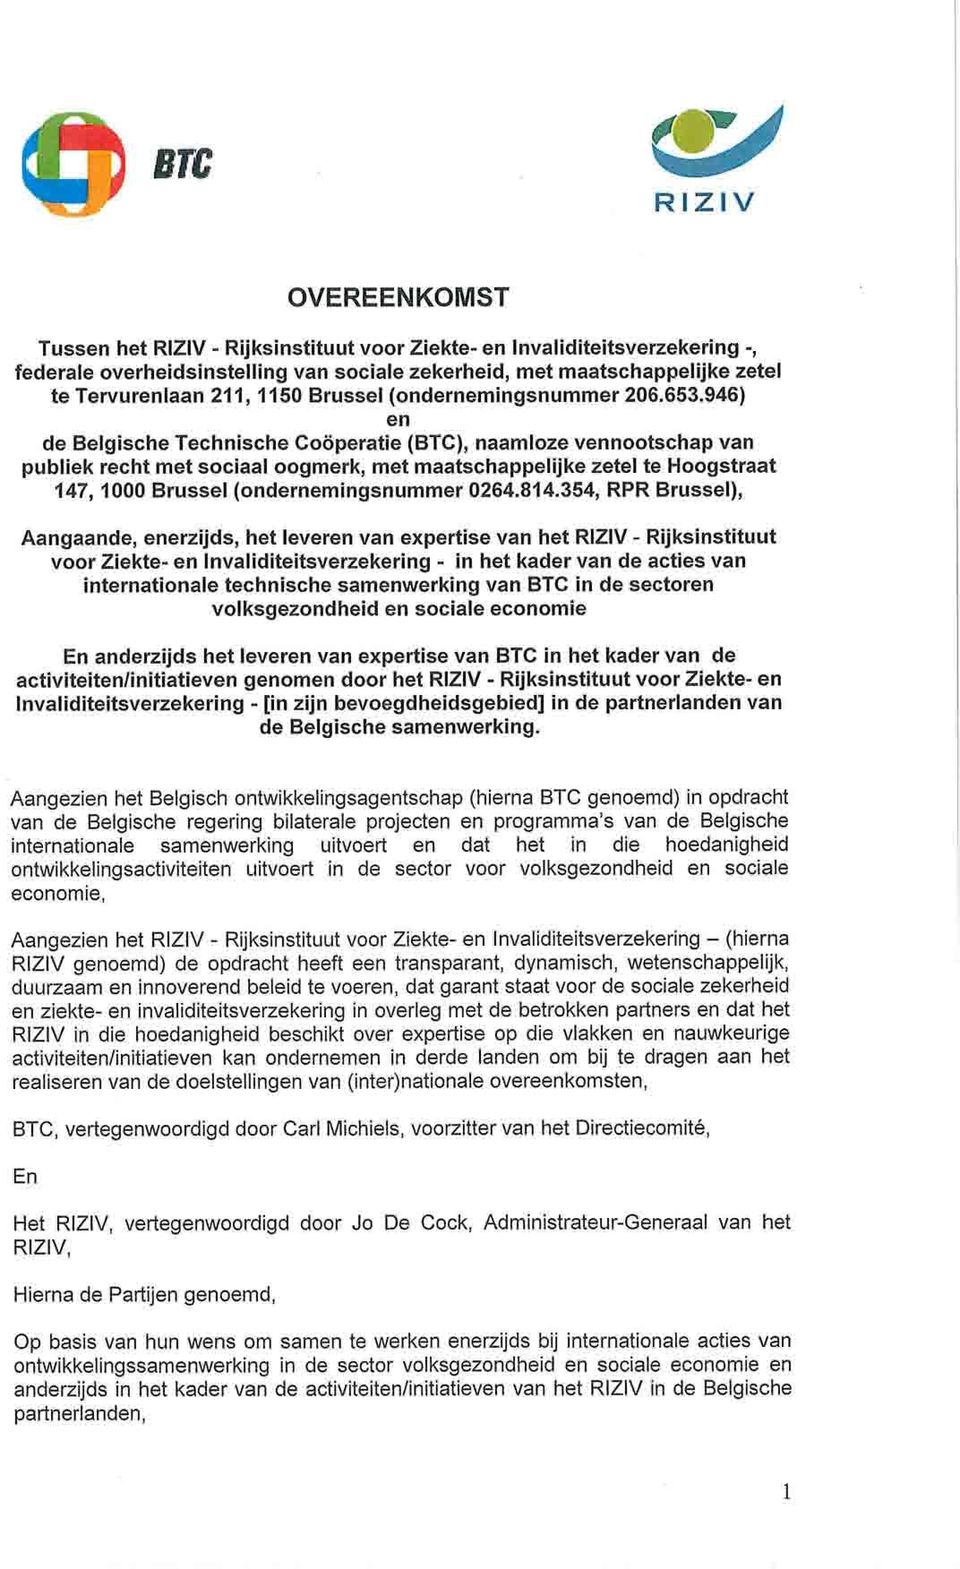 946) en de Belgische Technische Cooperatie (BTC), naamloze vennootschap van publiek recht met sociaal oogmerk, met maatschappelijke zetel te Hoogstraat 147, 1000 Brussel (ondernemingsnummer 0264.814.